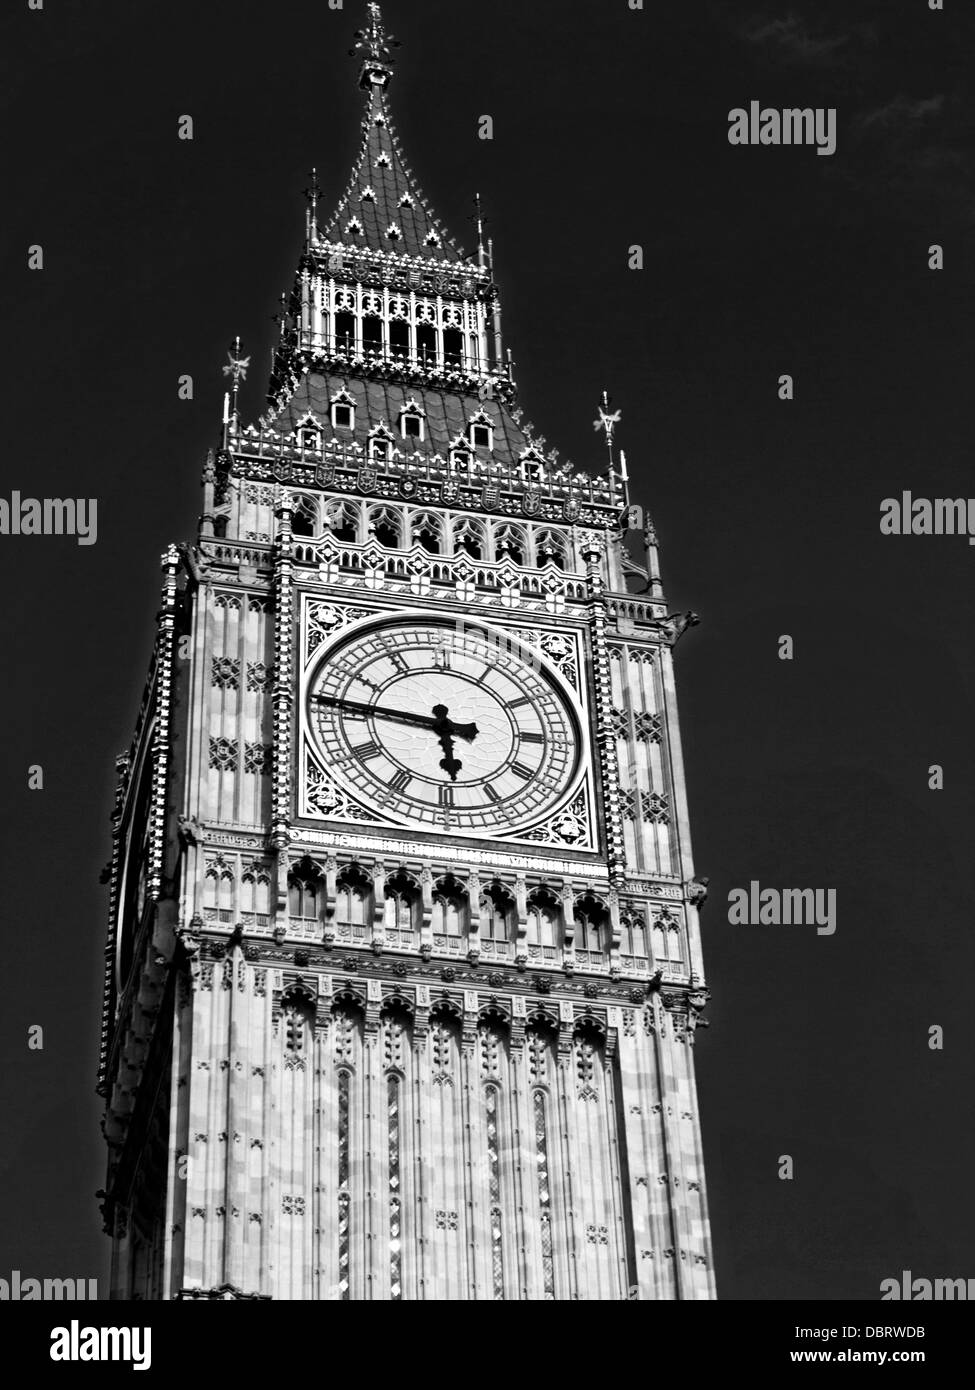 Détail de Big Ben, situé à l'extrémité nord du Palais de Westminster (Parlement), City of Westminster Banque D'Images